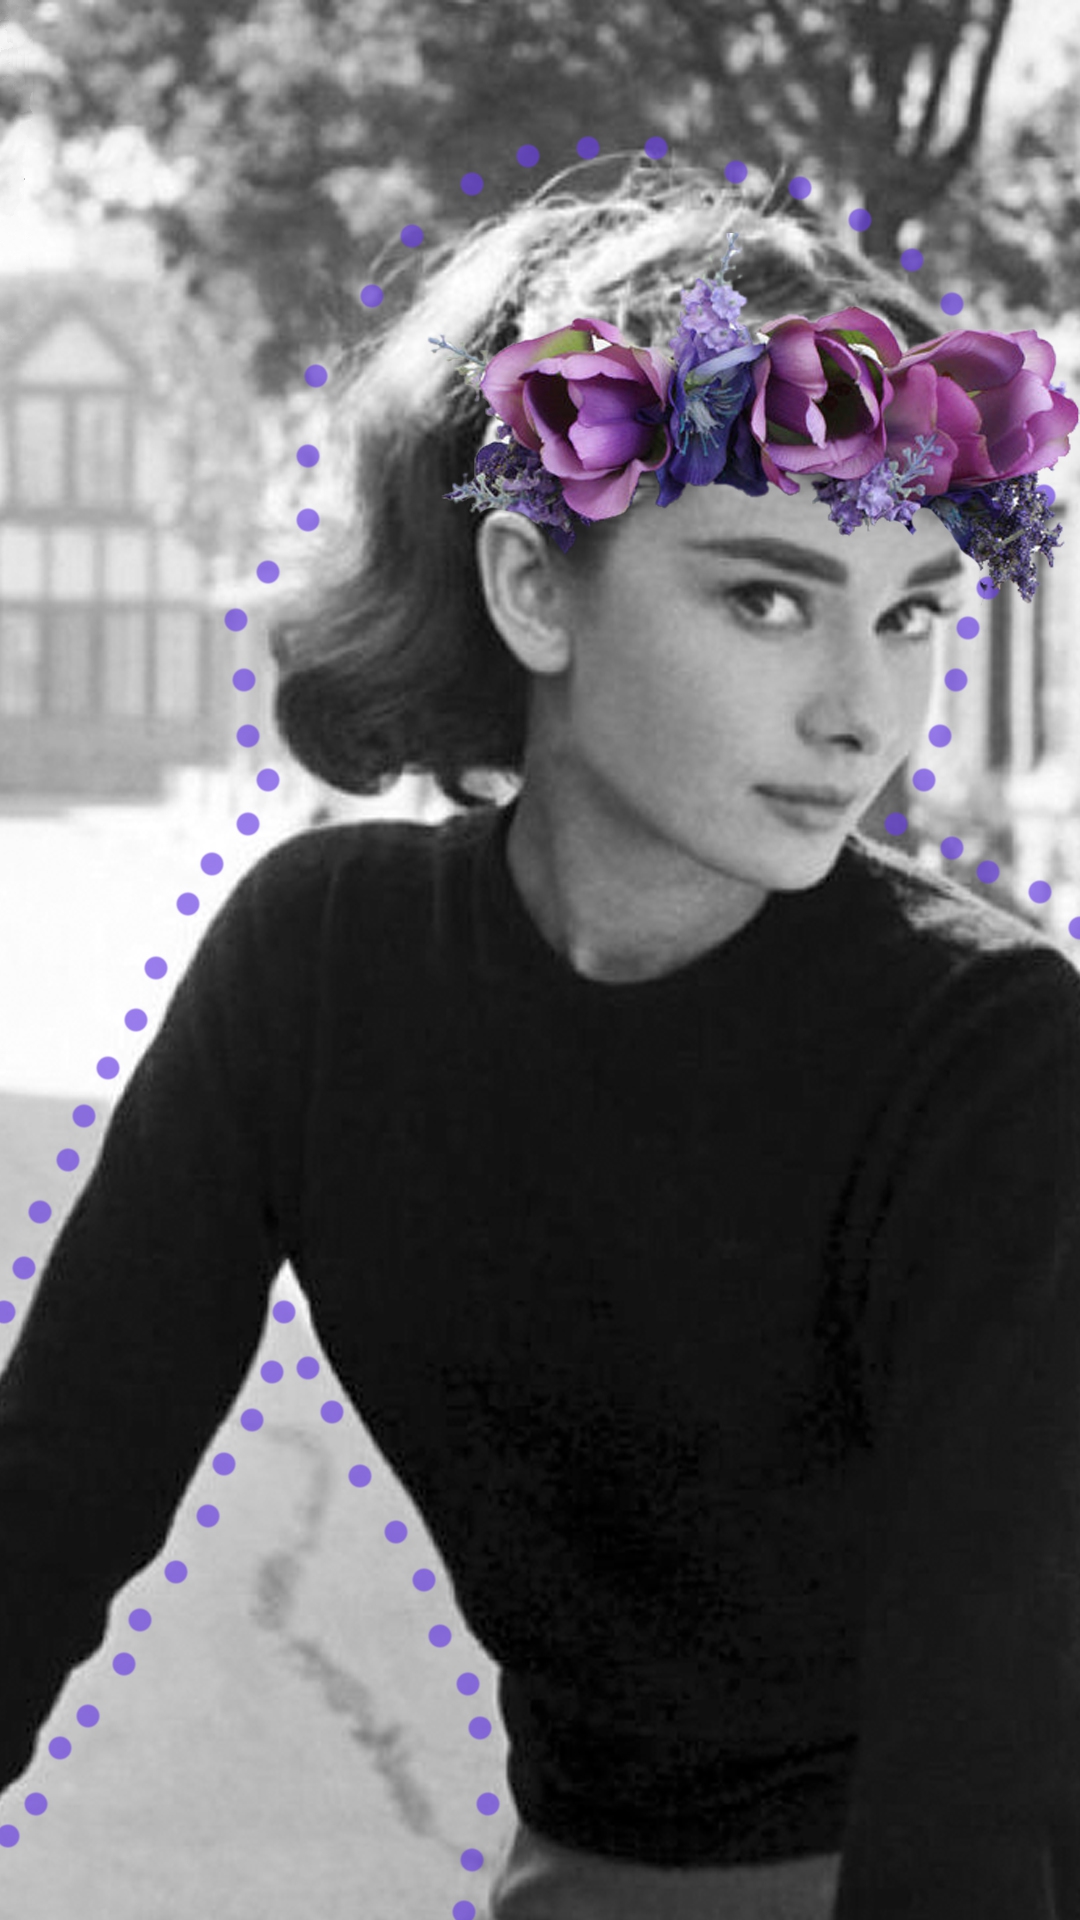 Audrey Hepburn wallpaper (13 images) pictures download